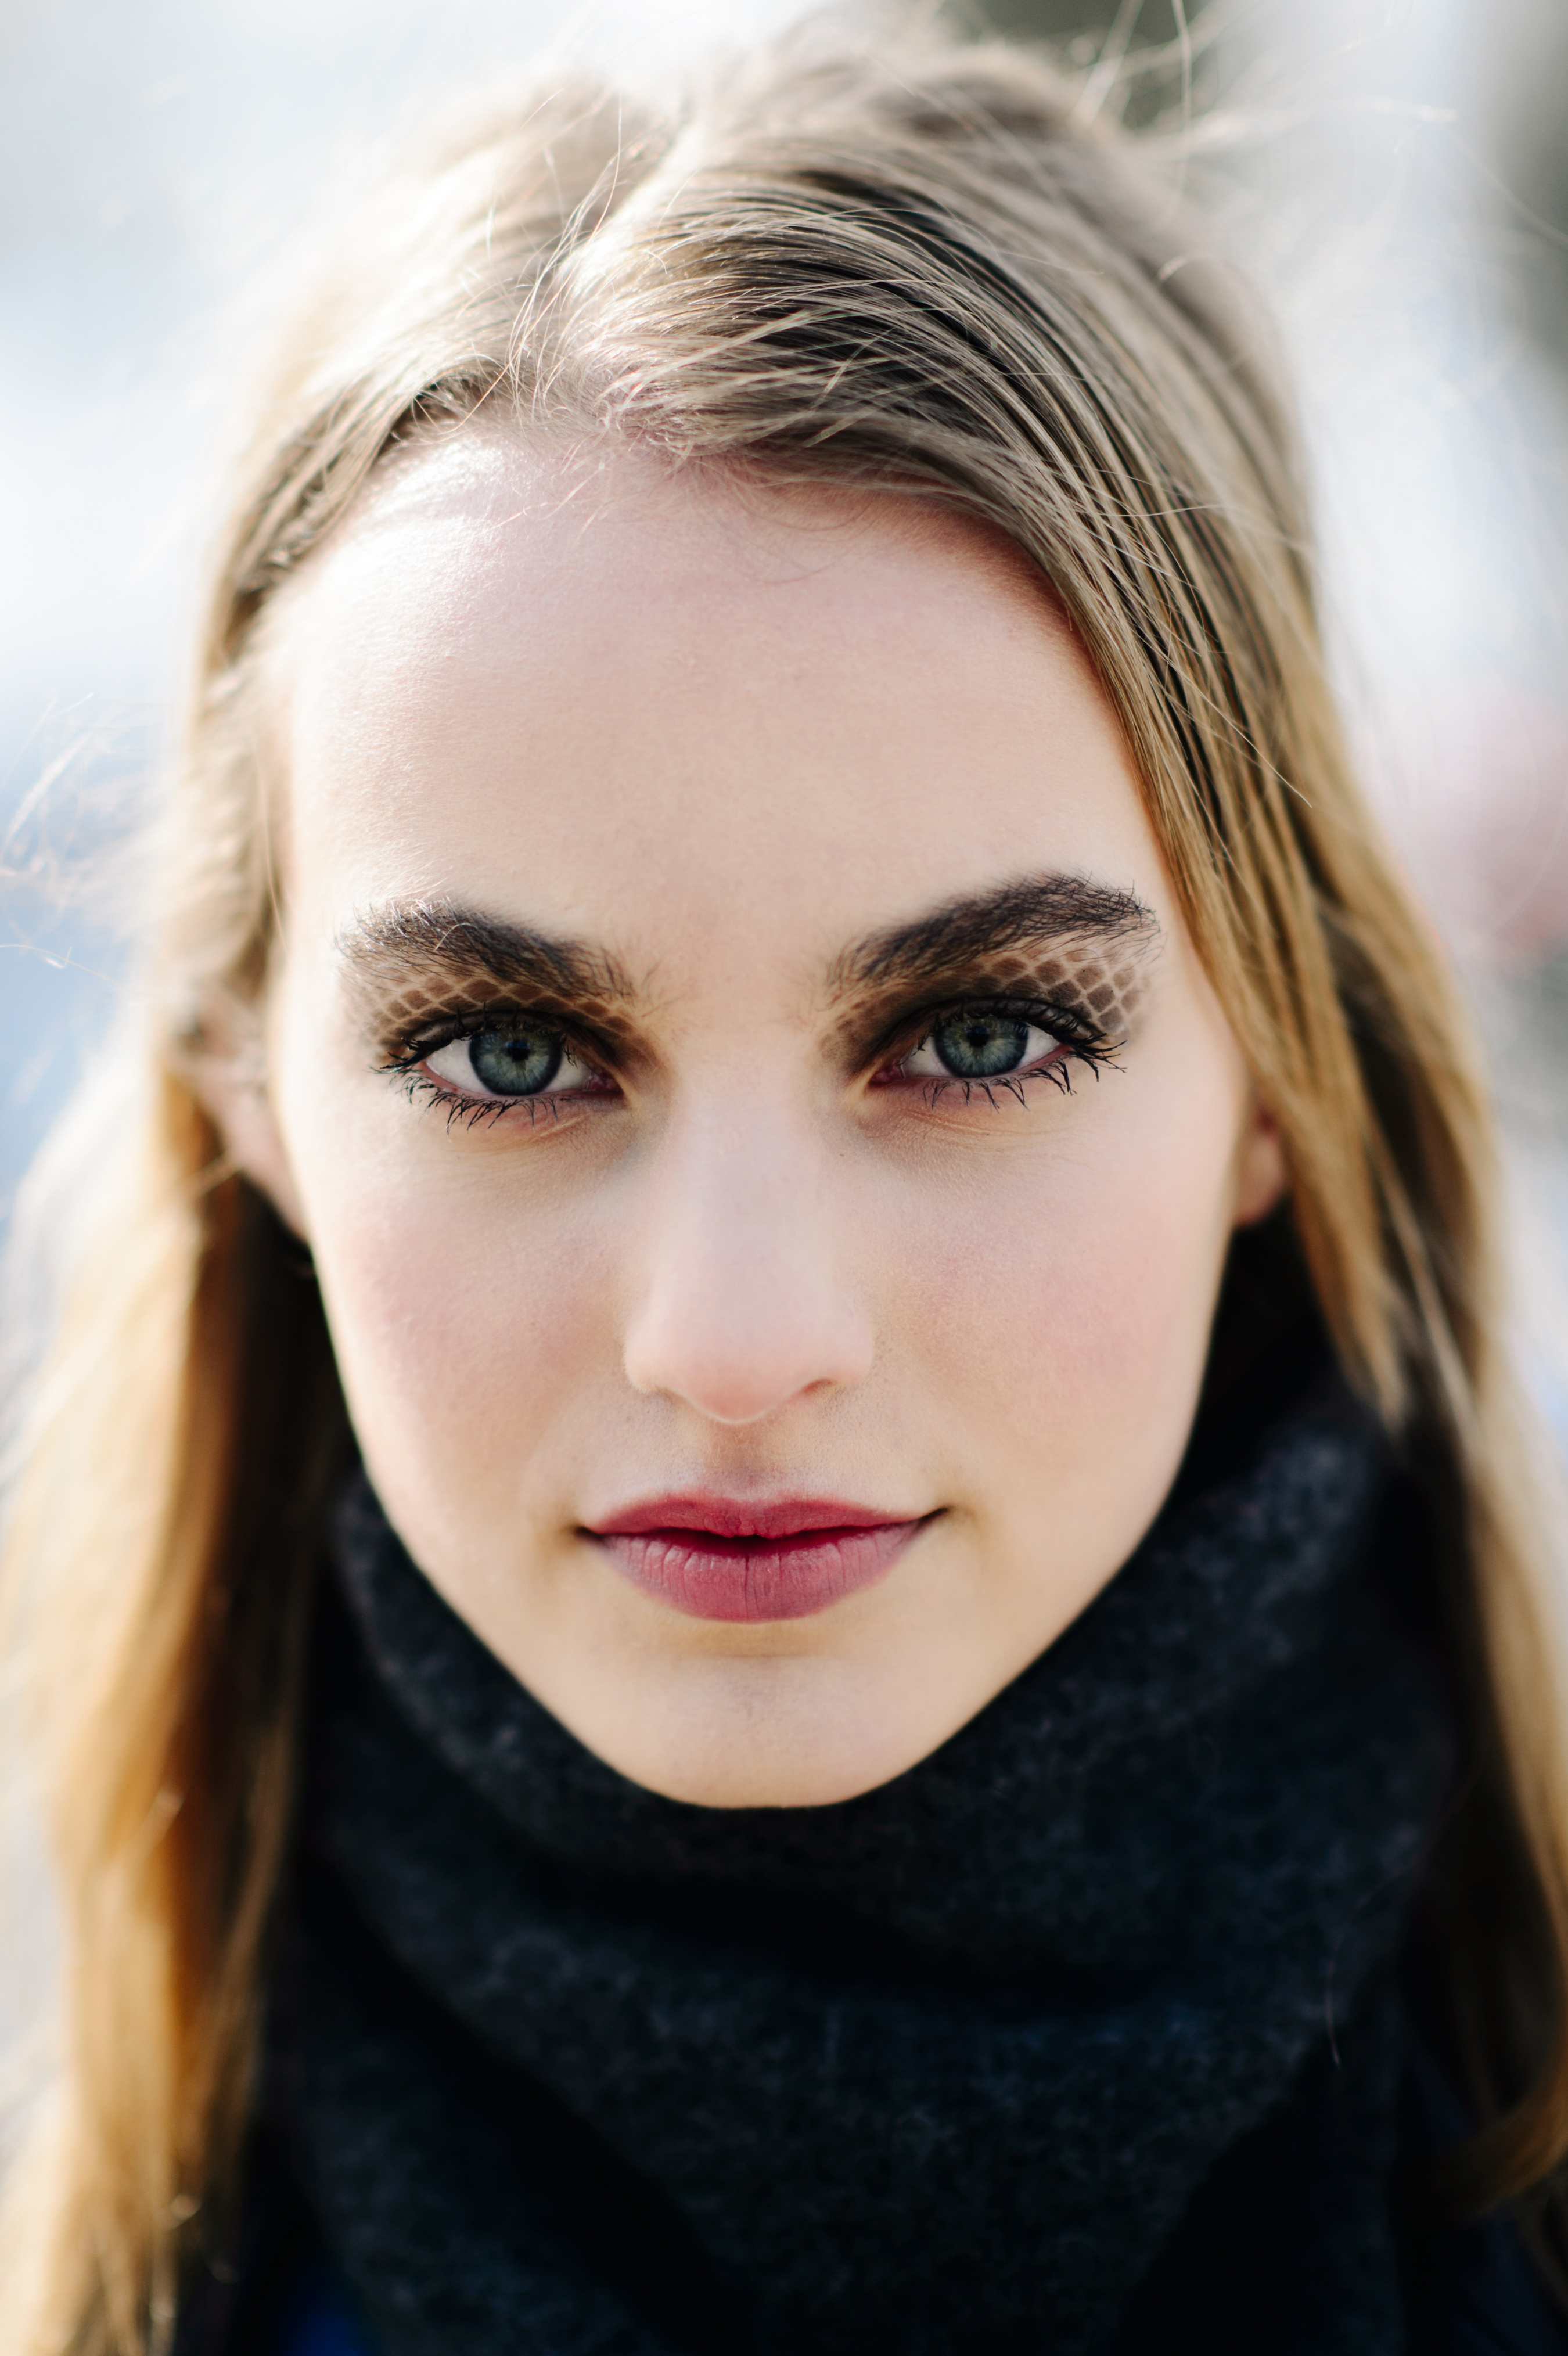 People 2700x4057 Maartje Verhoef women model face blue eyes depth of field lipstick Dutch